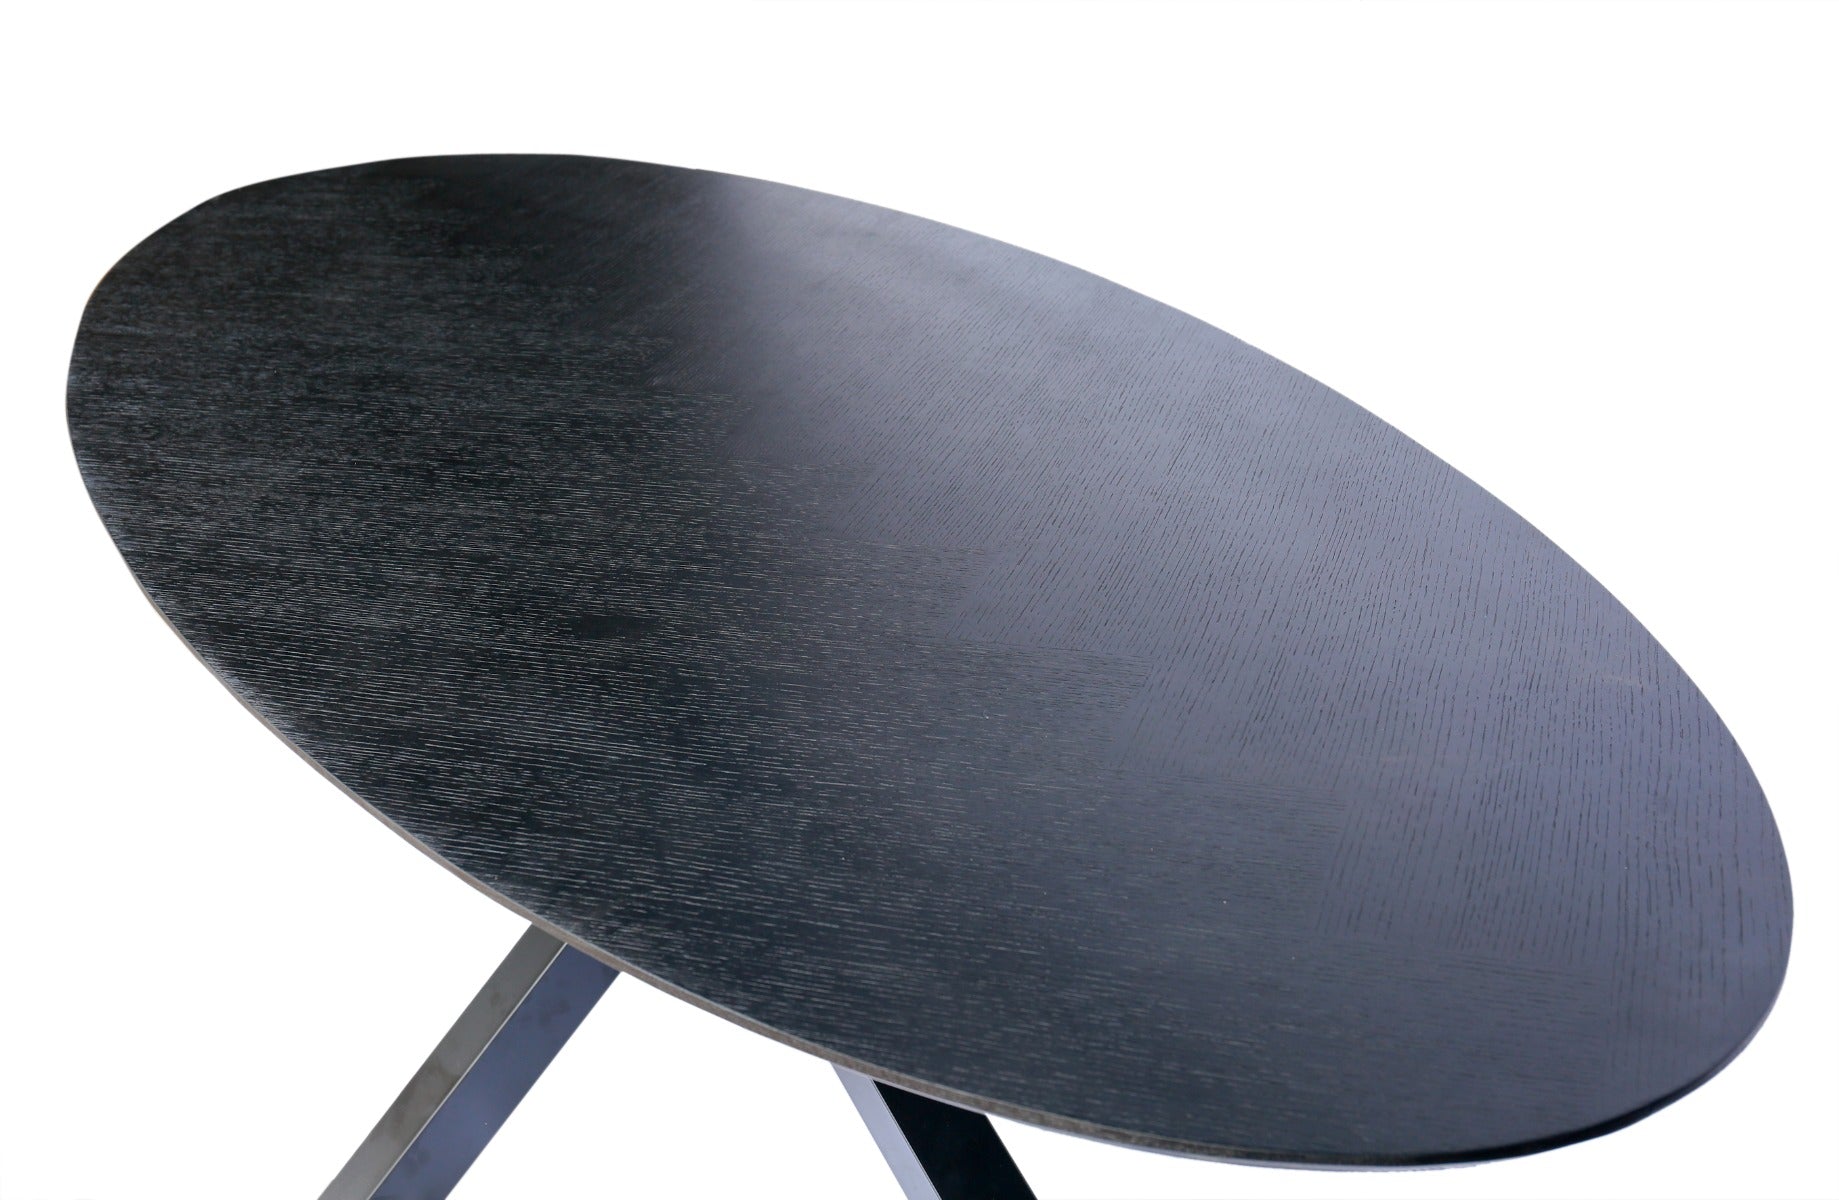 Ovale zwart eiken eettafel in Visgraat verband 260x120 cm